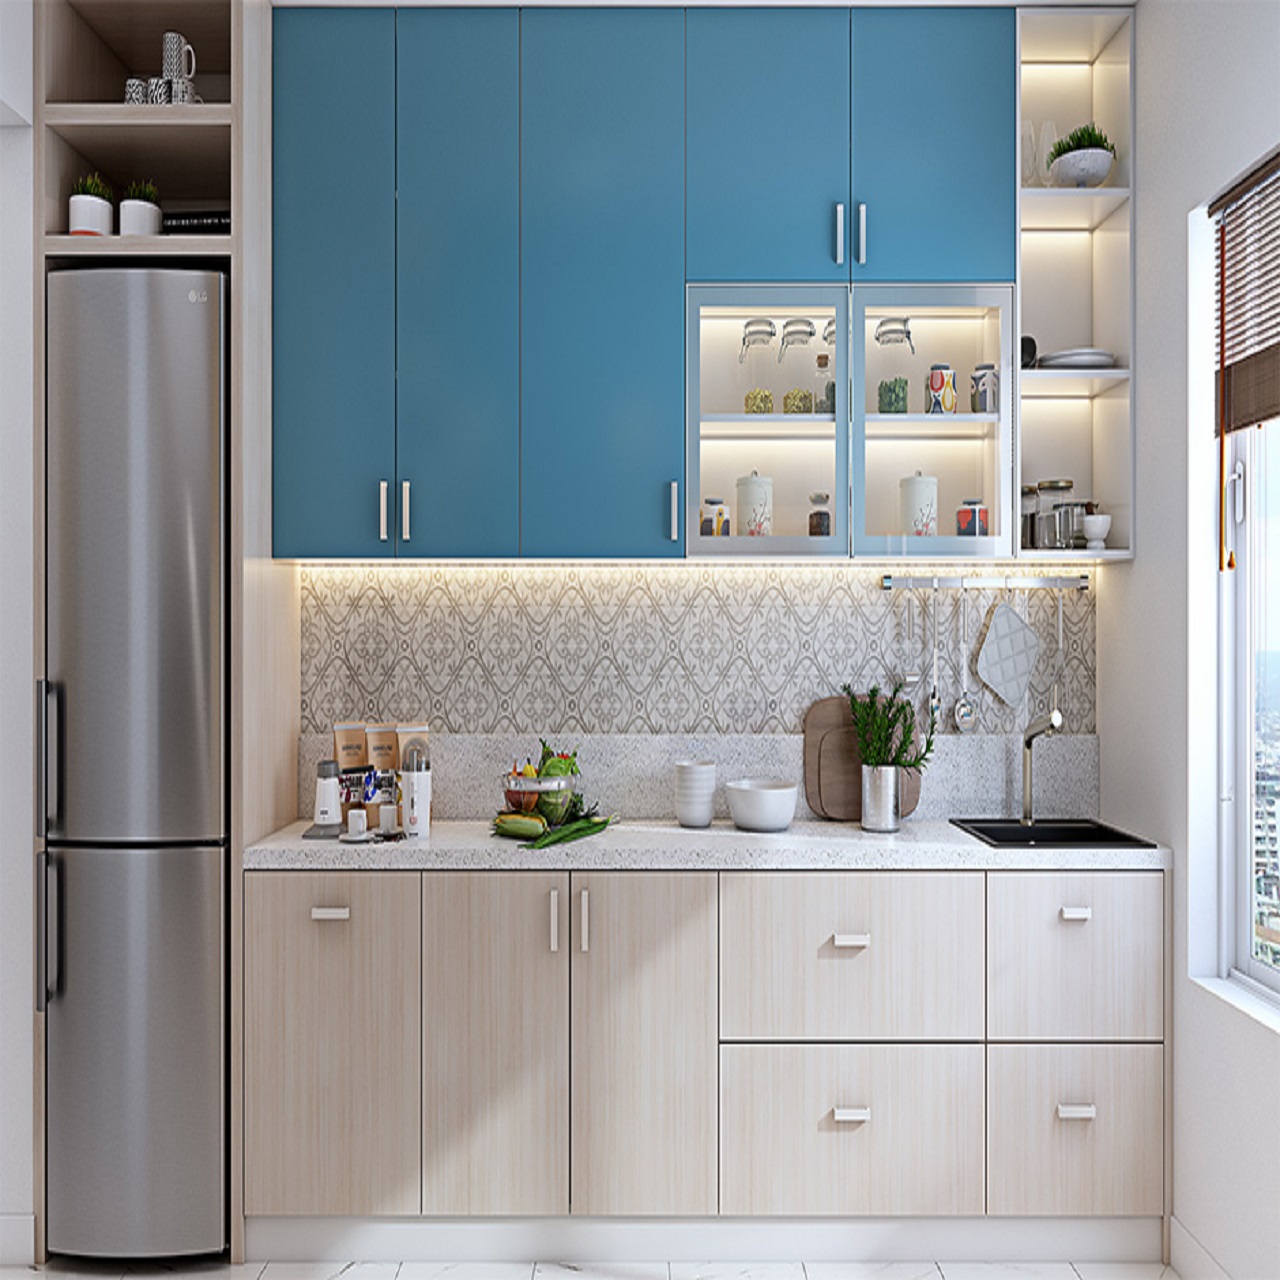 Straight layout modular kitchen design